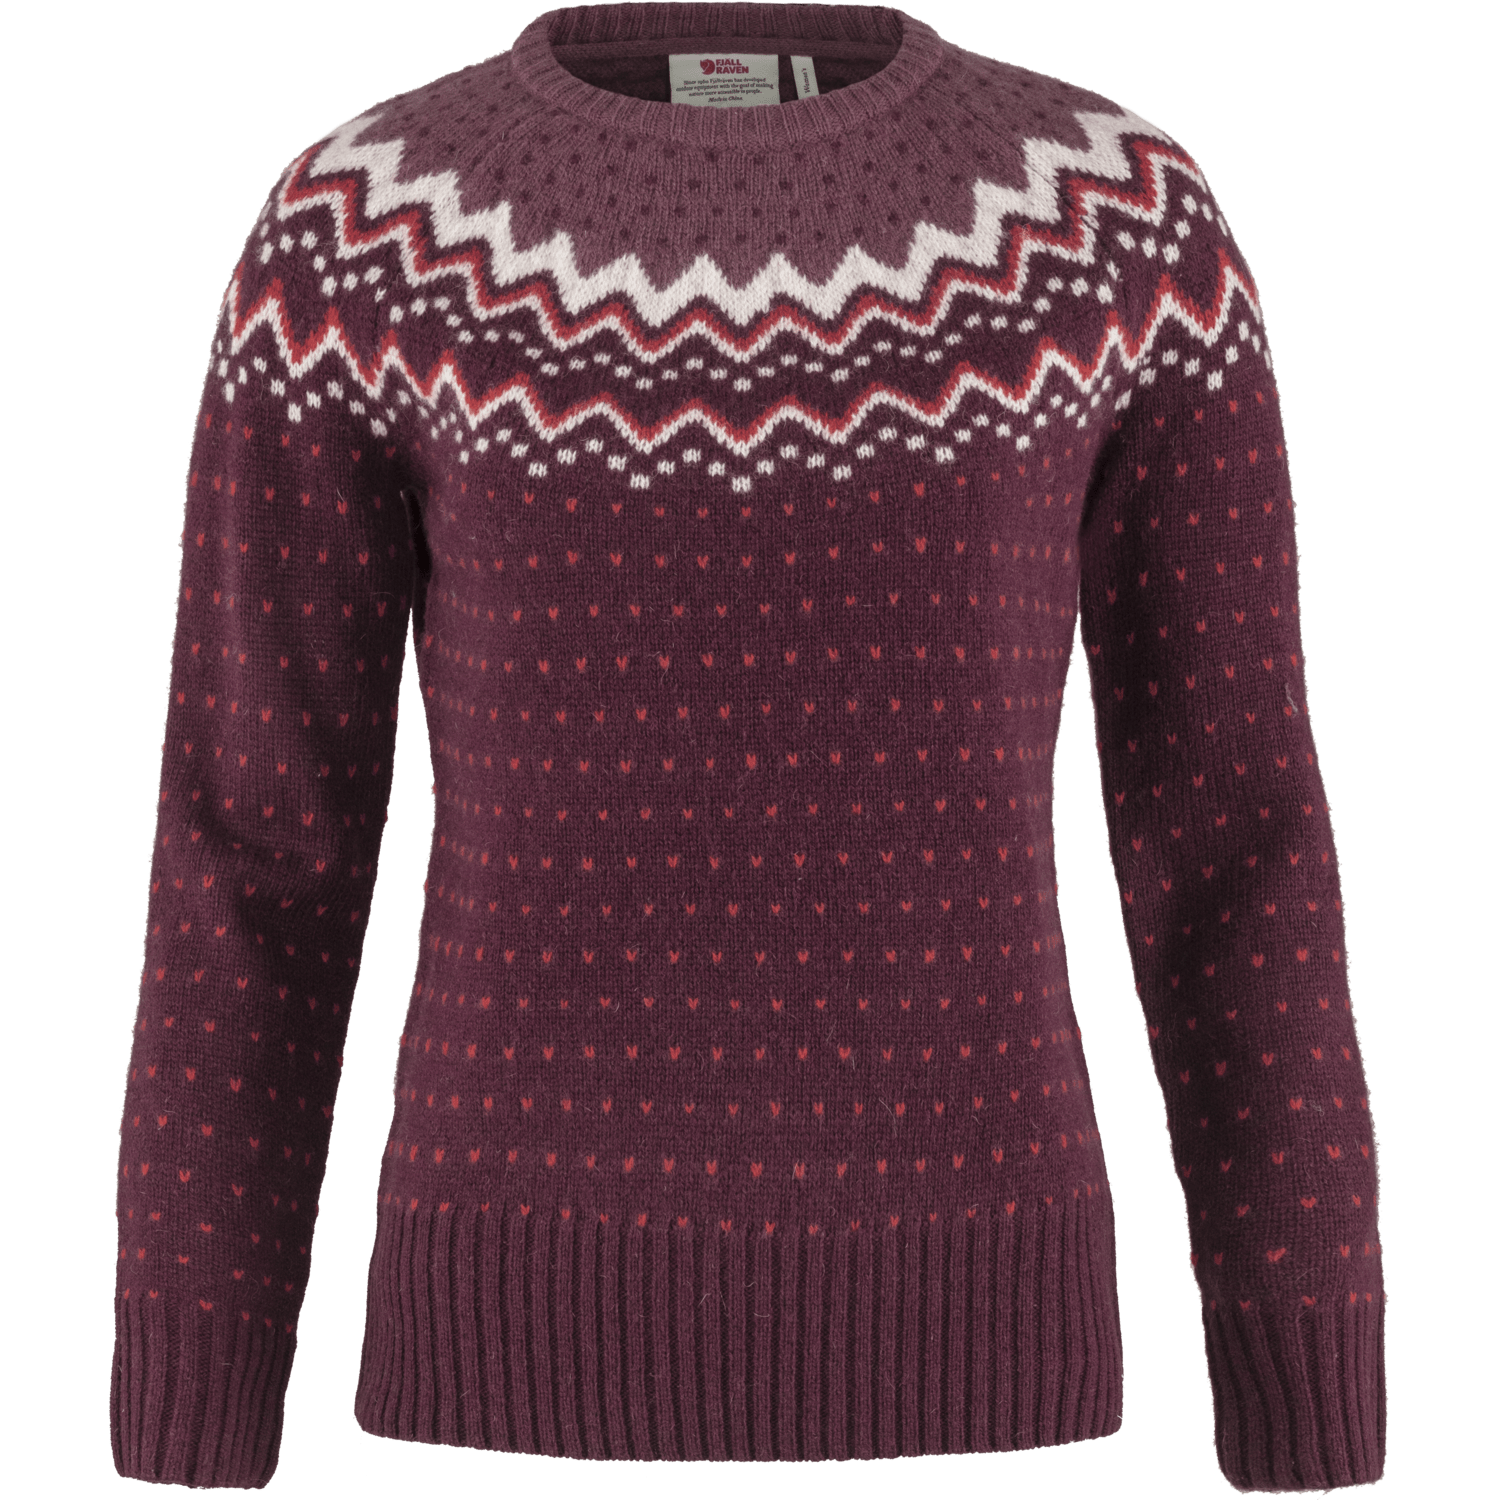 Fjällräven Australia, Övik Knit Sweater W, Mid Layers, Women's, Everyday Outdoor